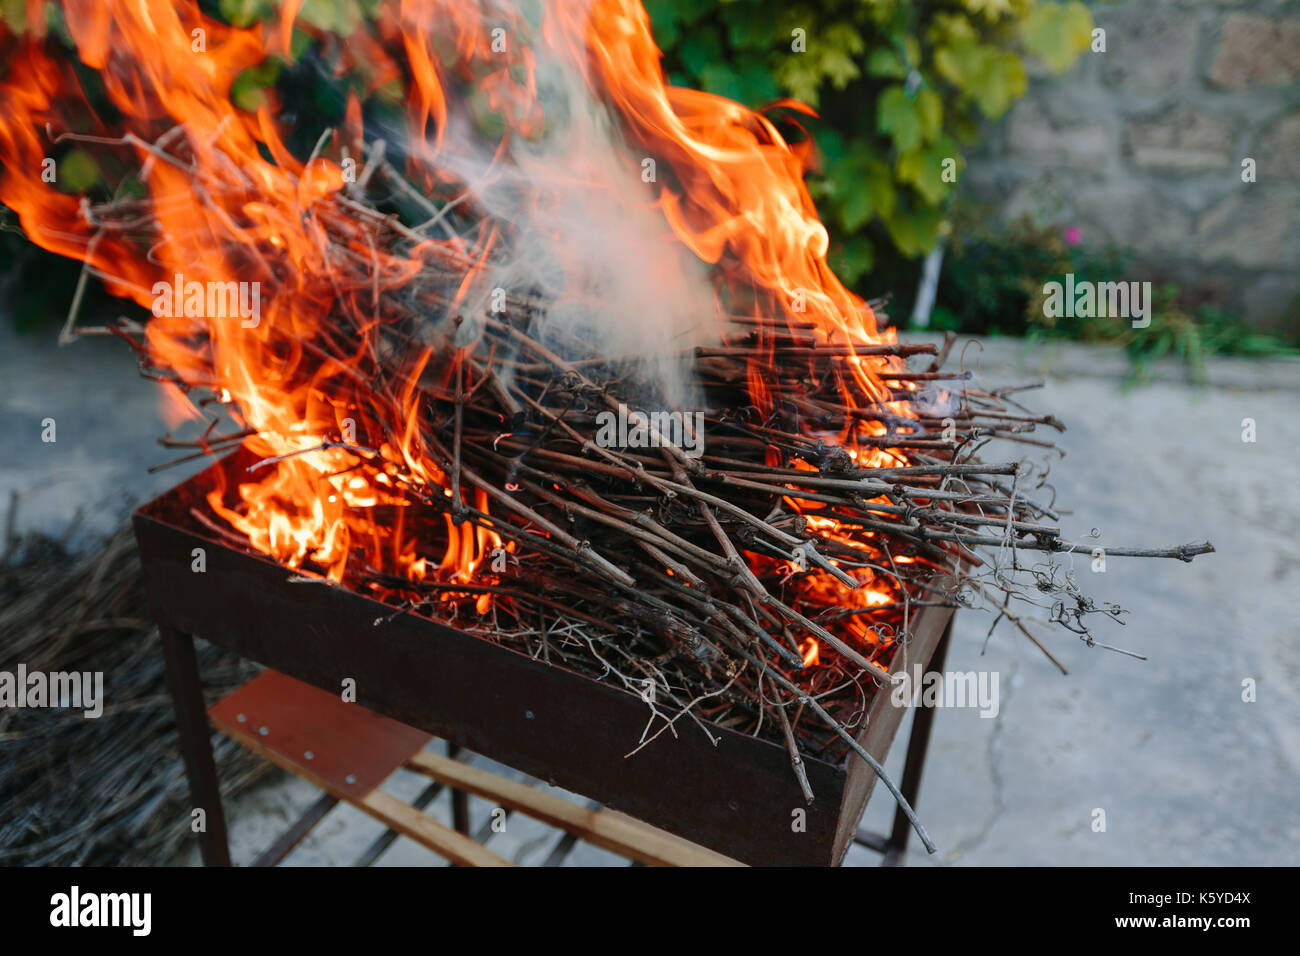 Resultado brasero que echaba llamas llamas #calor #reparacion #fuego #